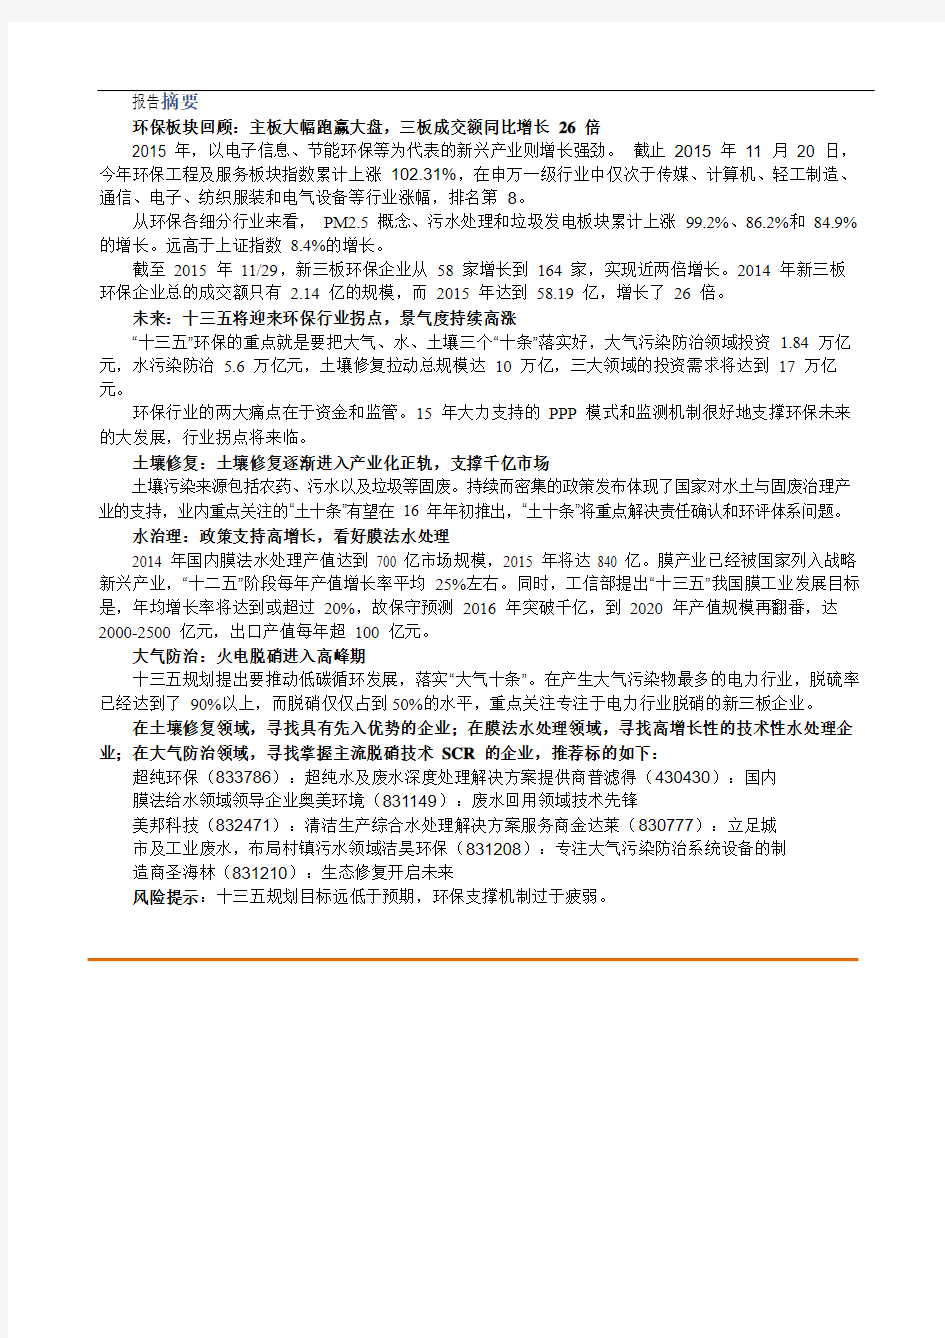 中国环保行业全产业链深度分析报告